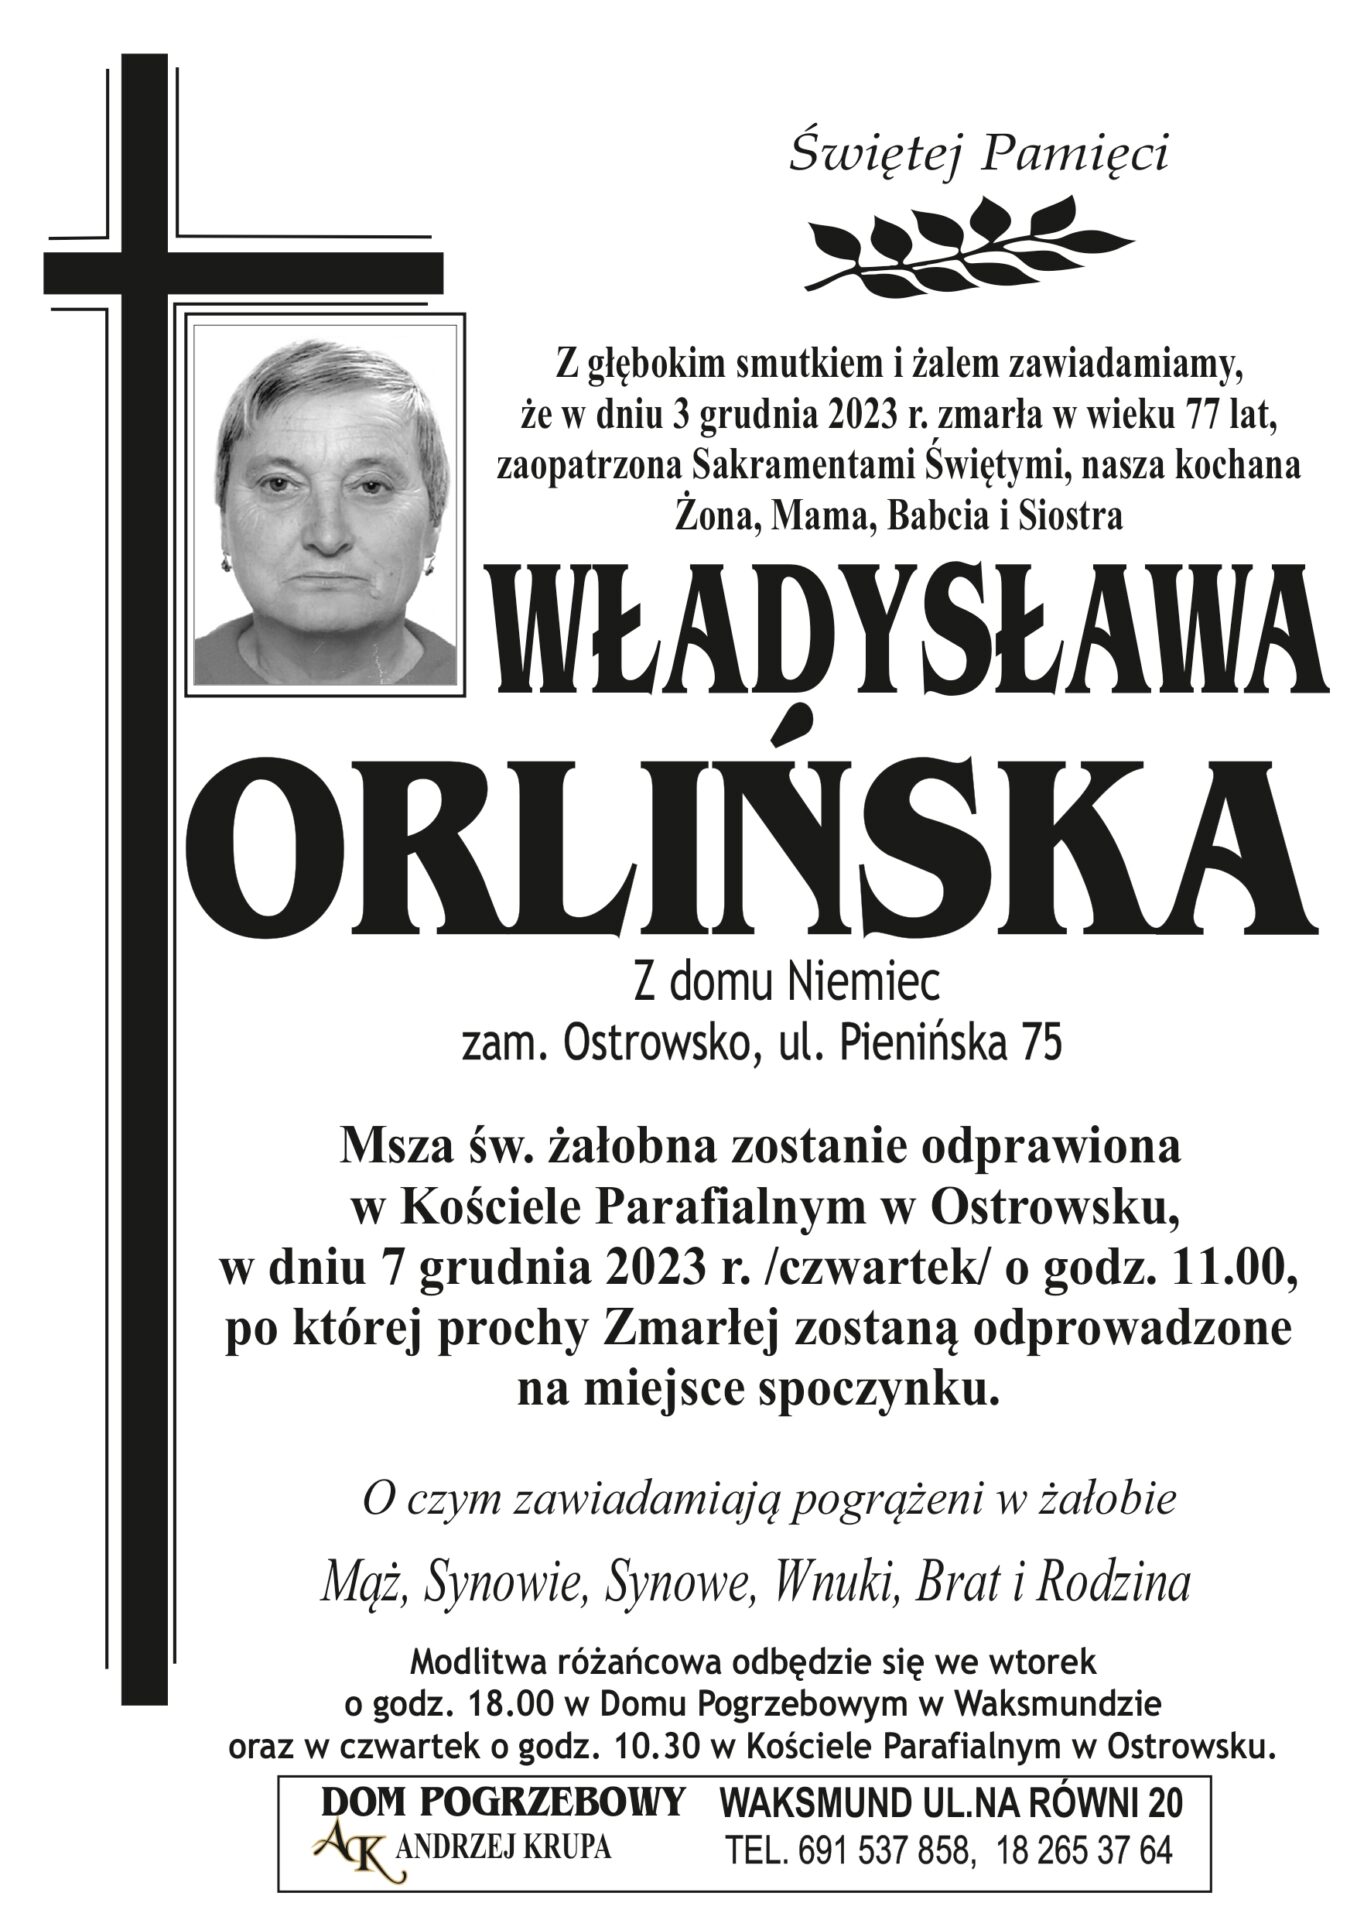 Władysława Orlińska